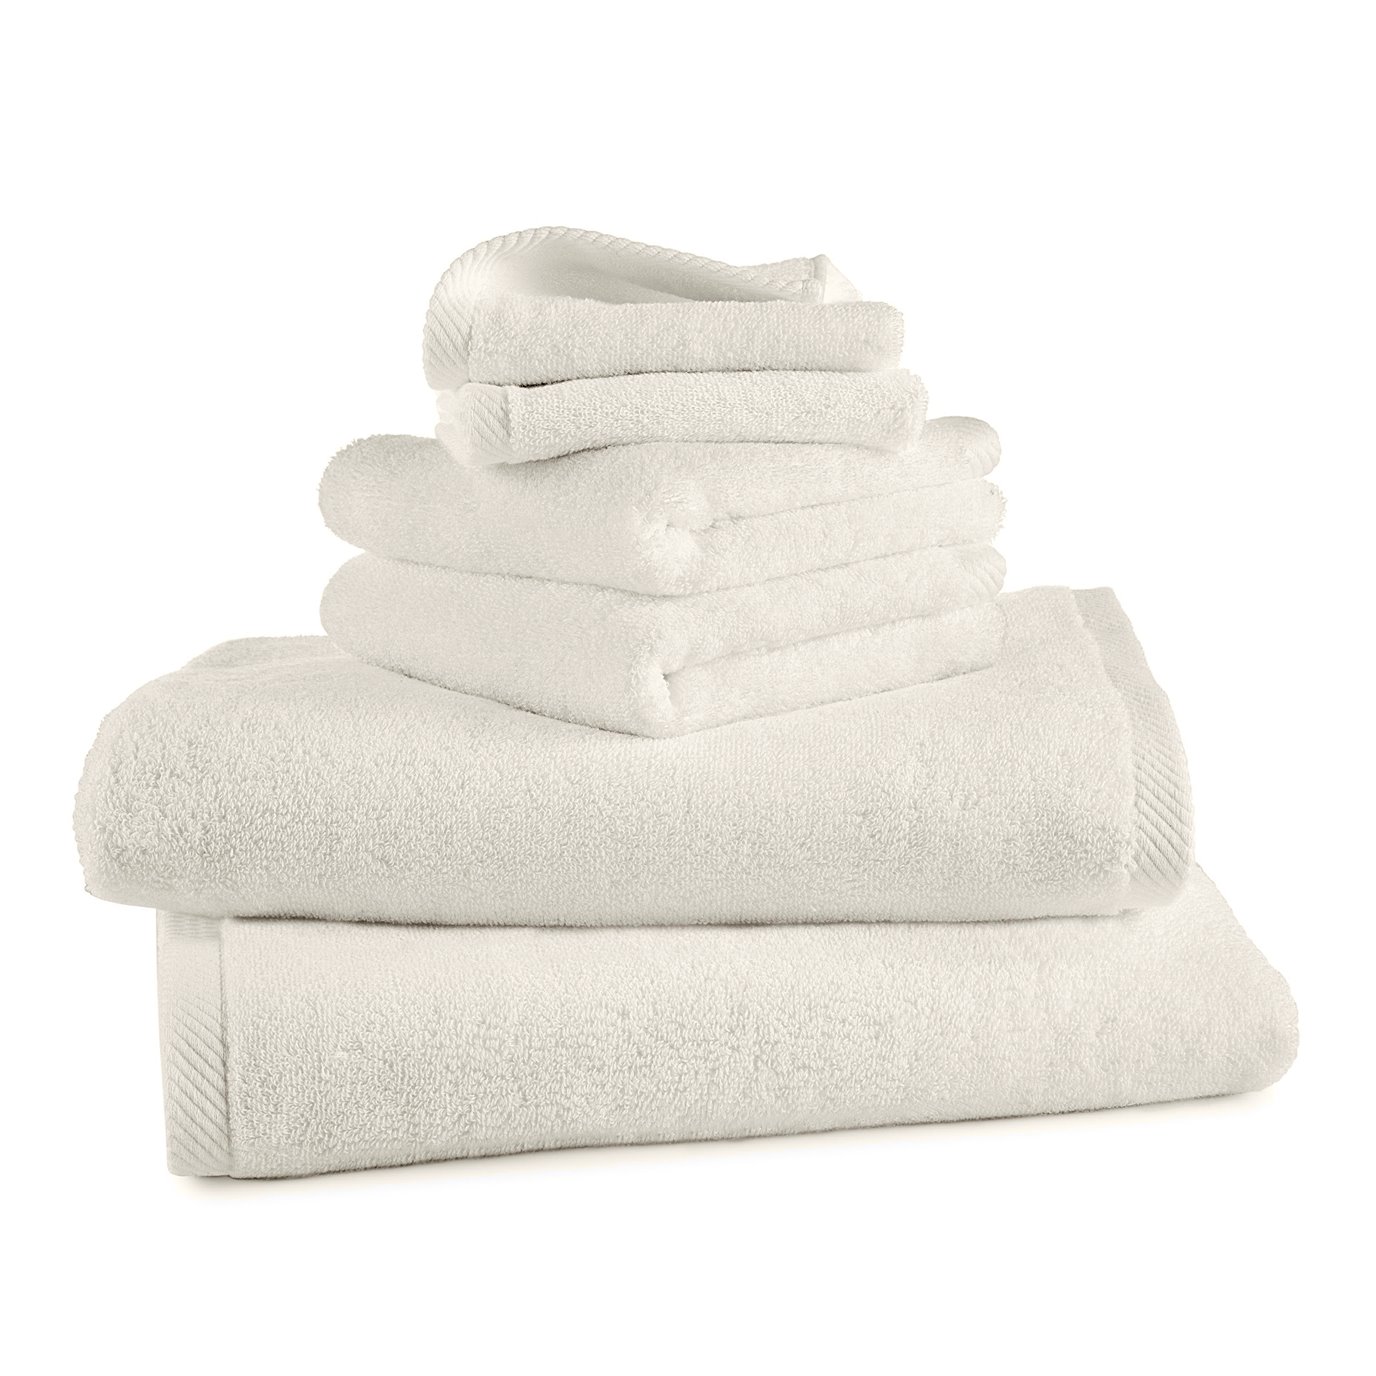 Izawa Highly Absorbent Cream 6 Piece Bath Towel Set